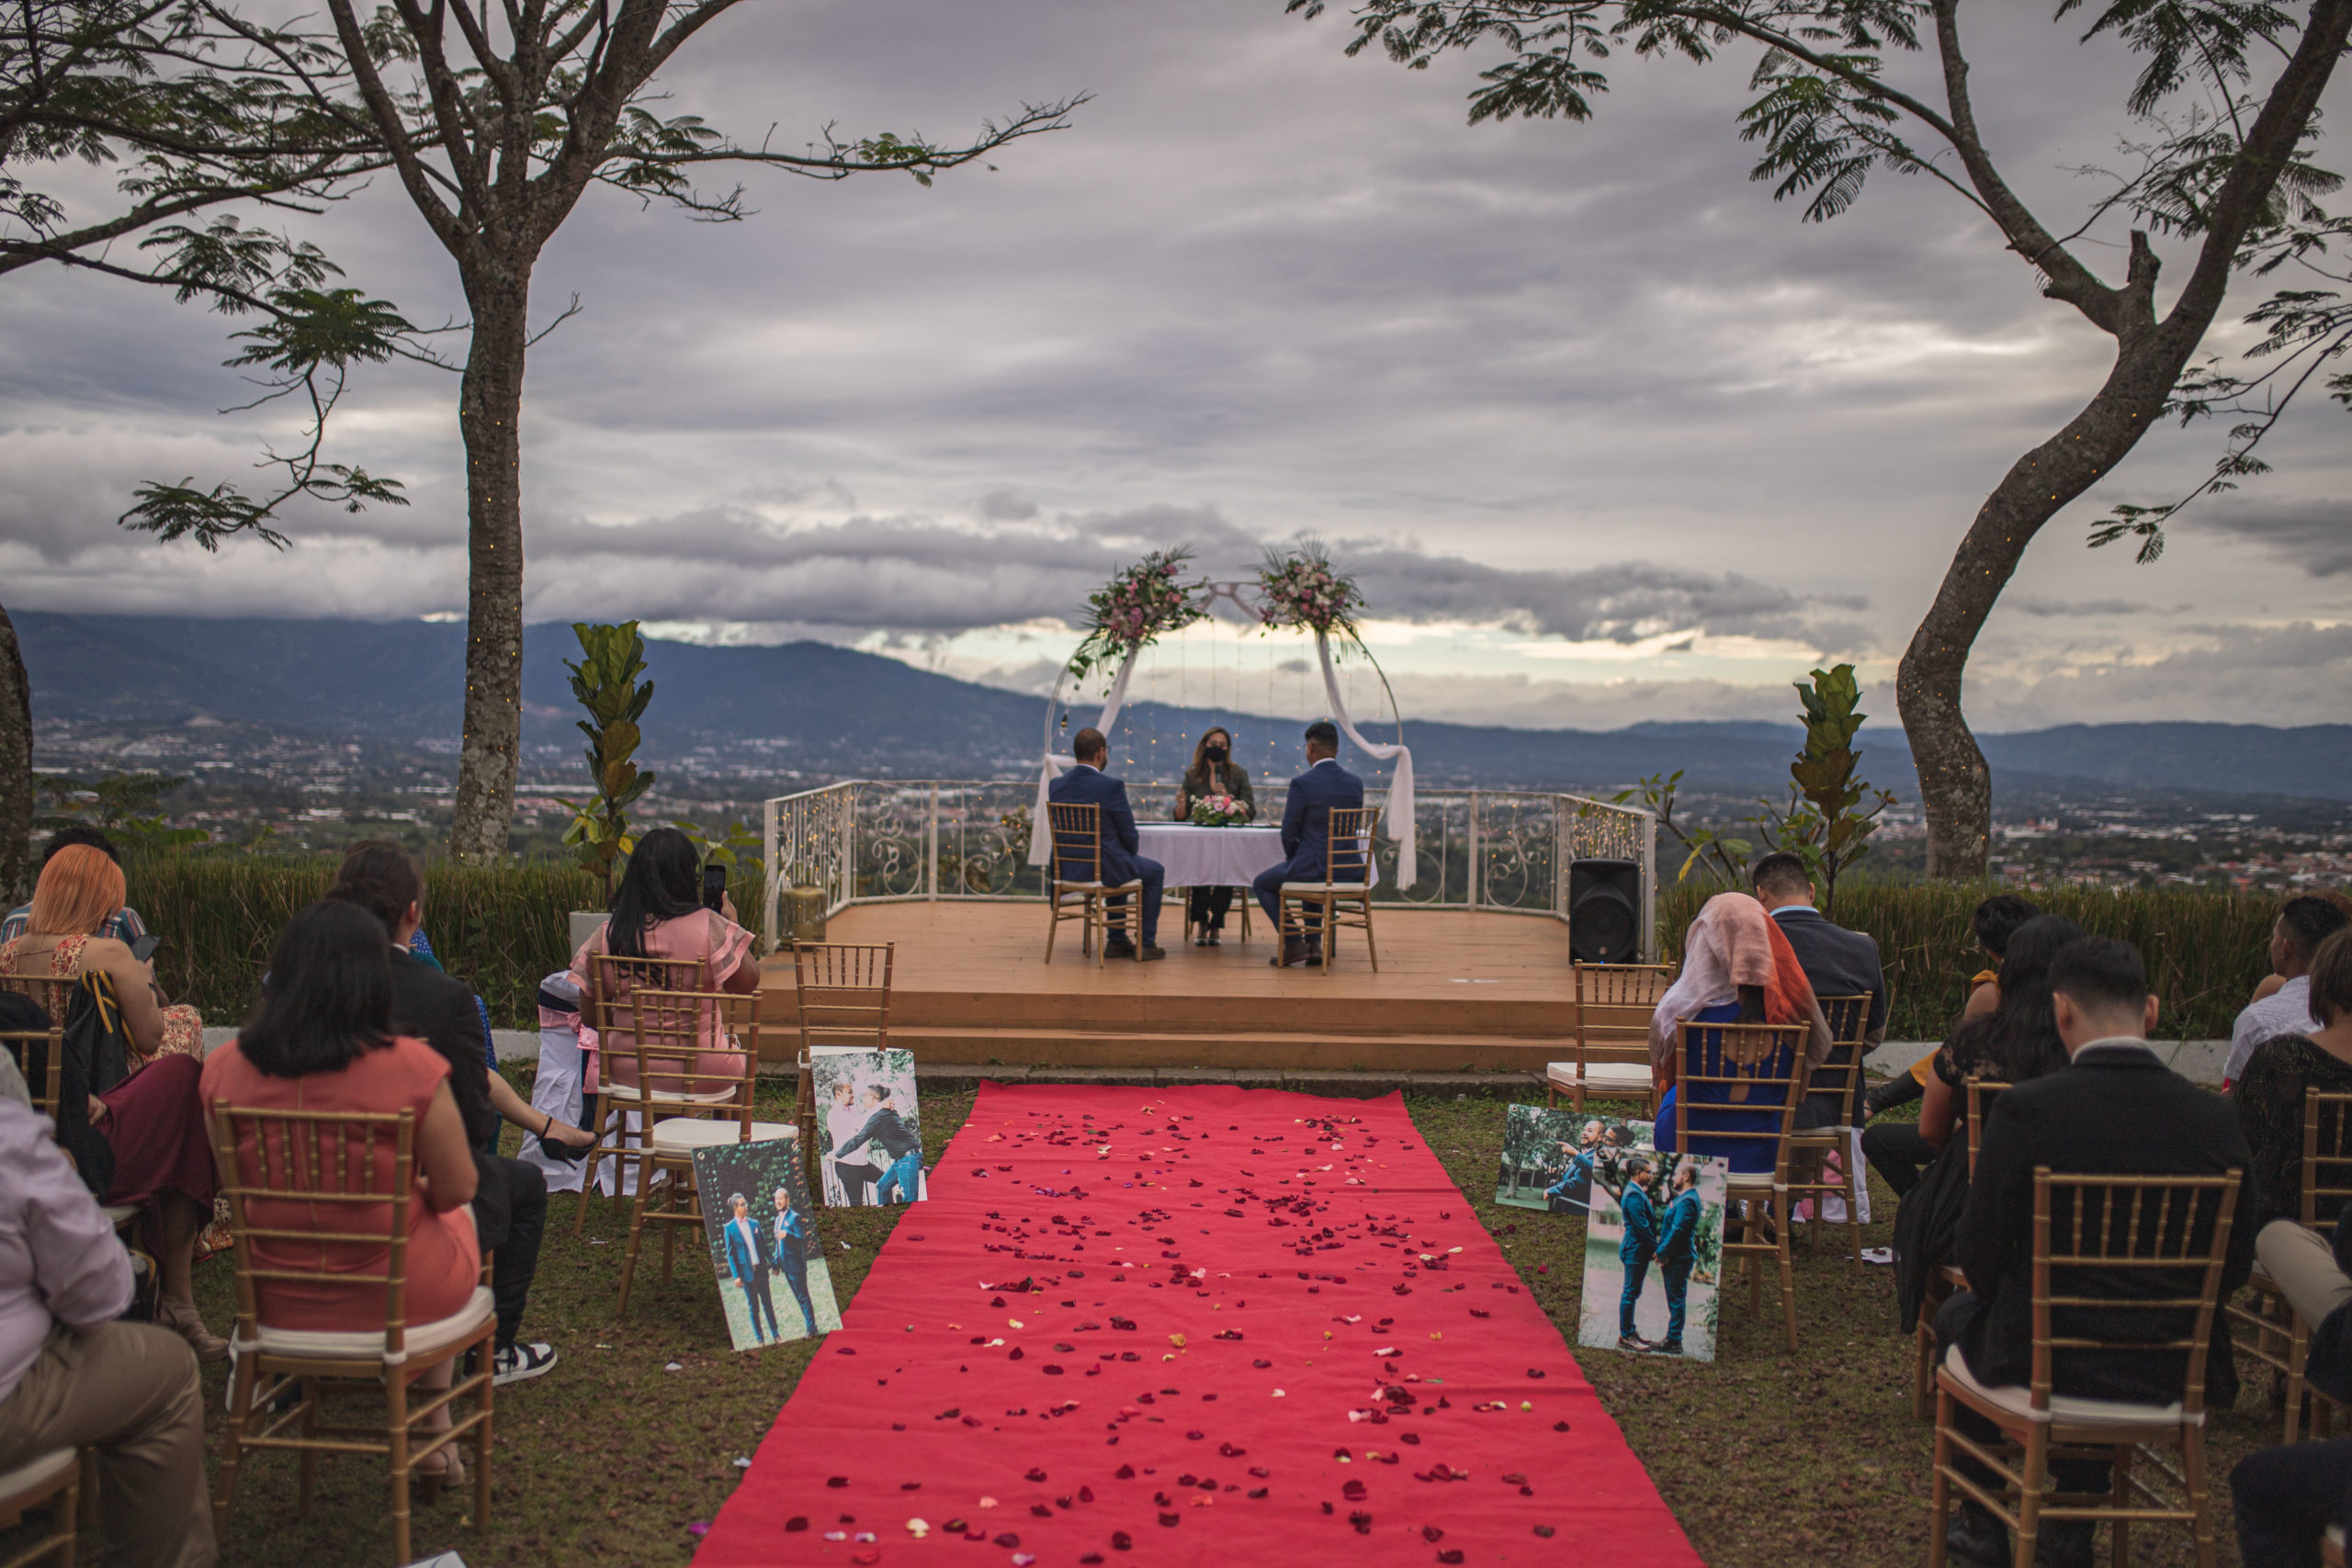 Nicas hallan en Costa Rica el matrimonio igualitario que no existe en su país